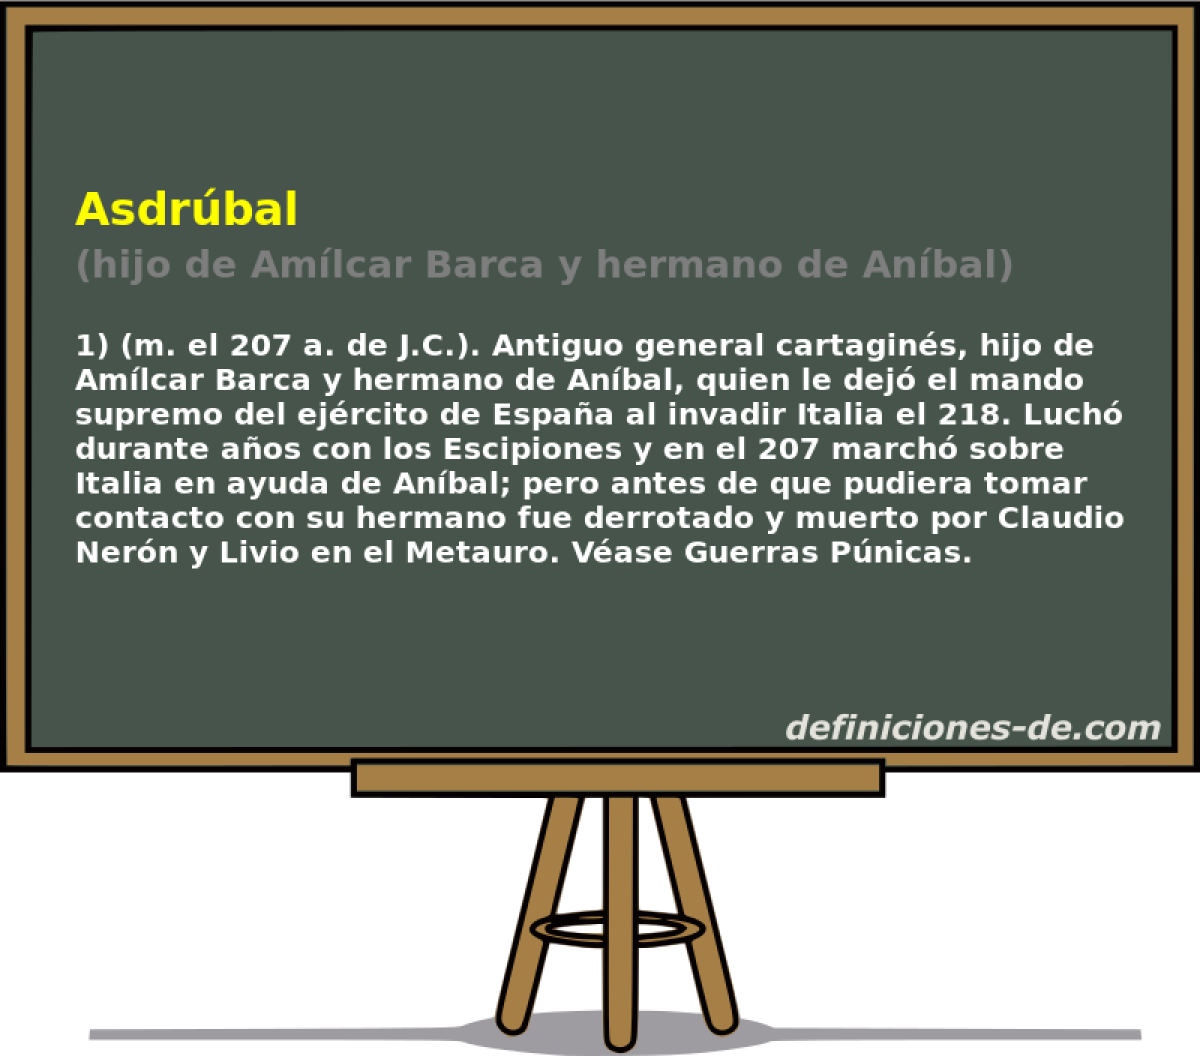 Asdrbal (hijo de Amlcar Barca y hermano de Anbal)